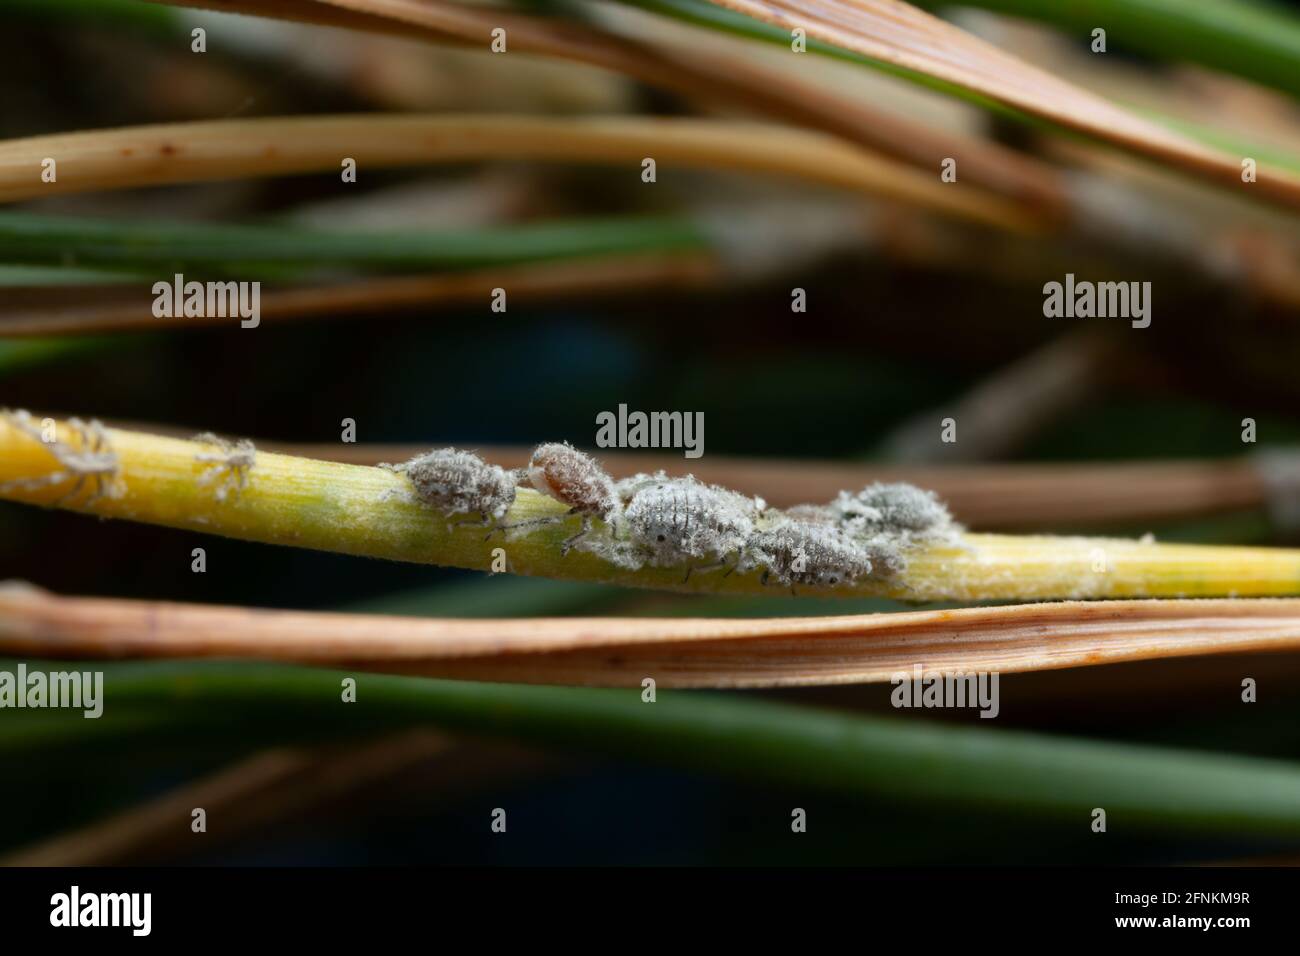 Aphids on pine needle Stock Photo